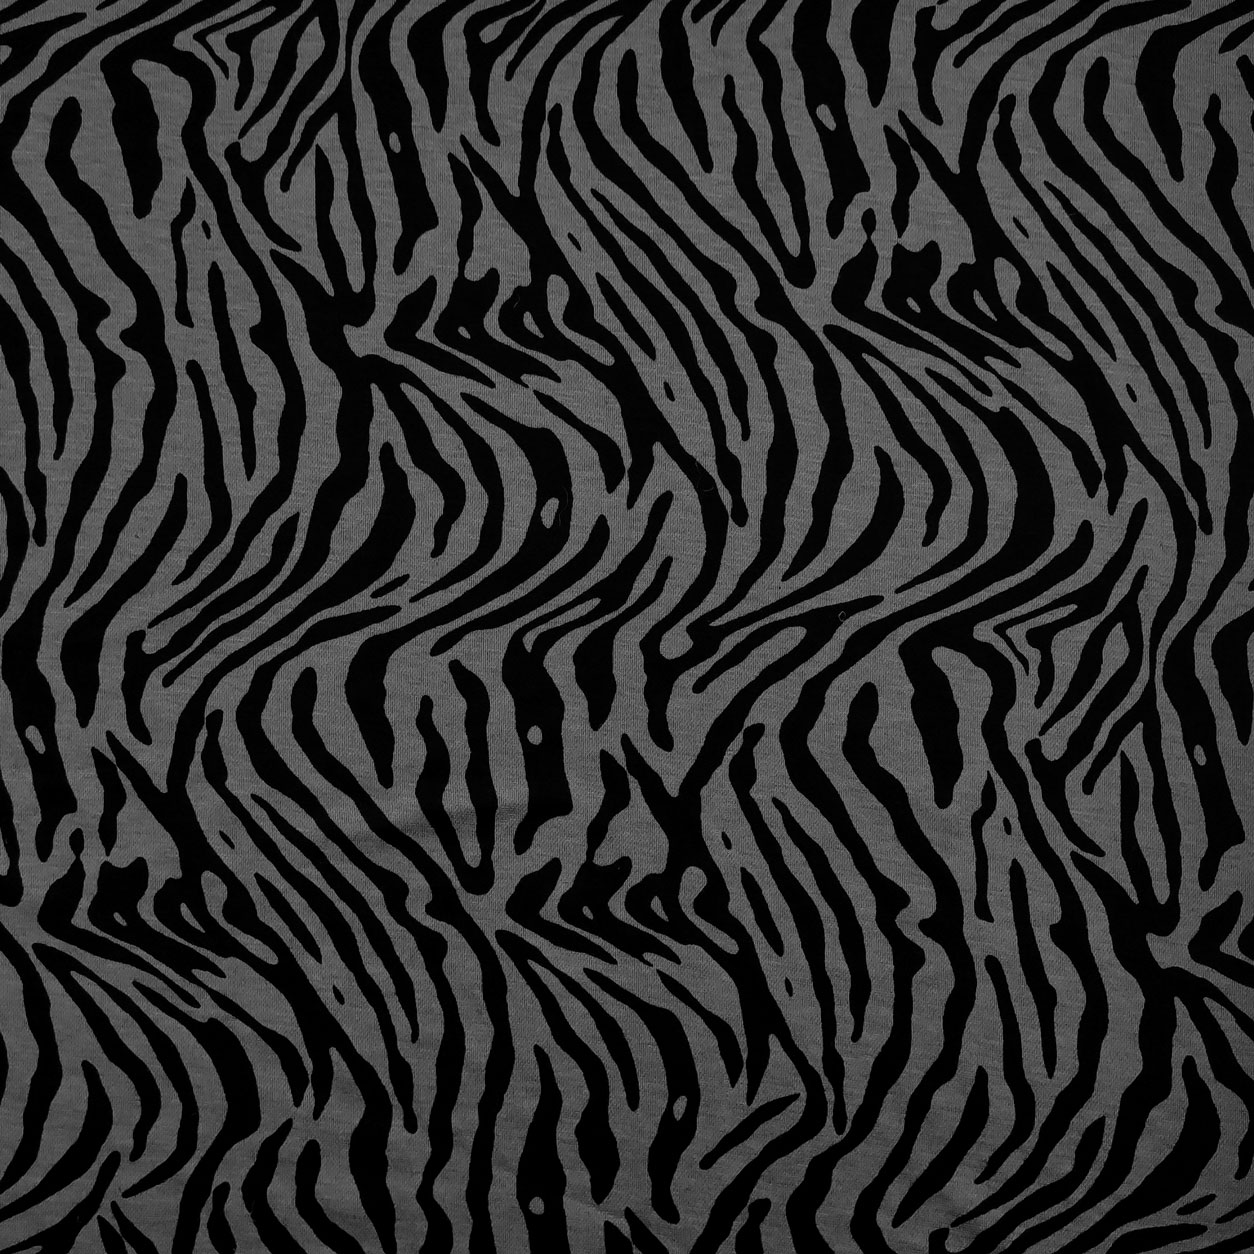 Tessuto in maglina zebrata grigio